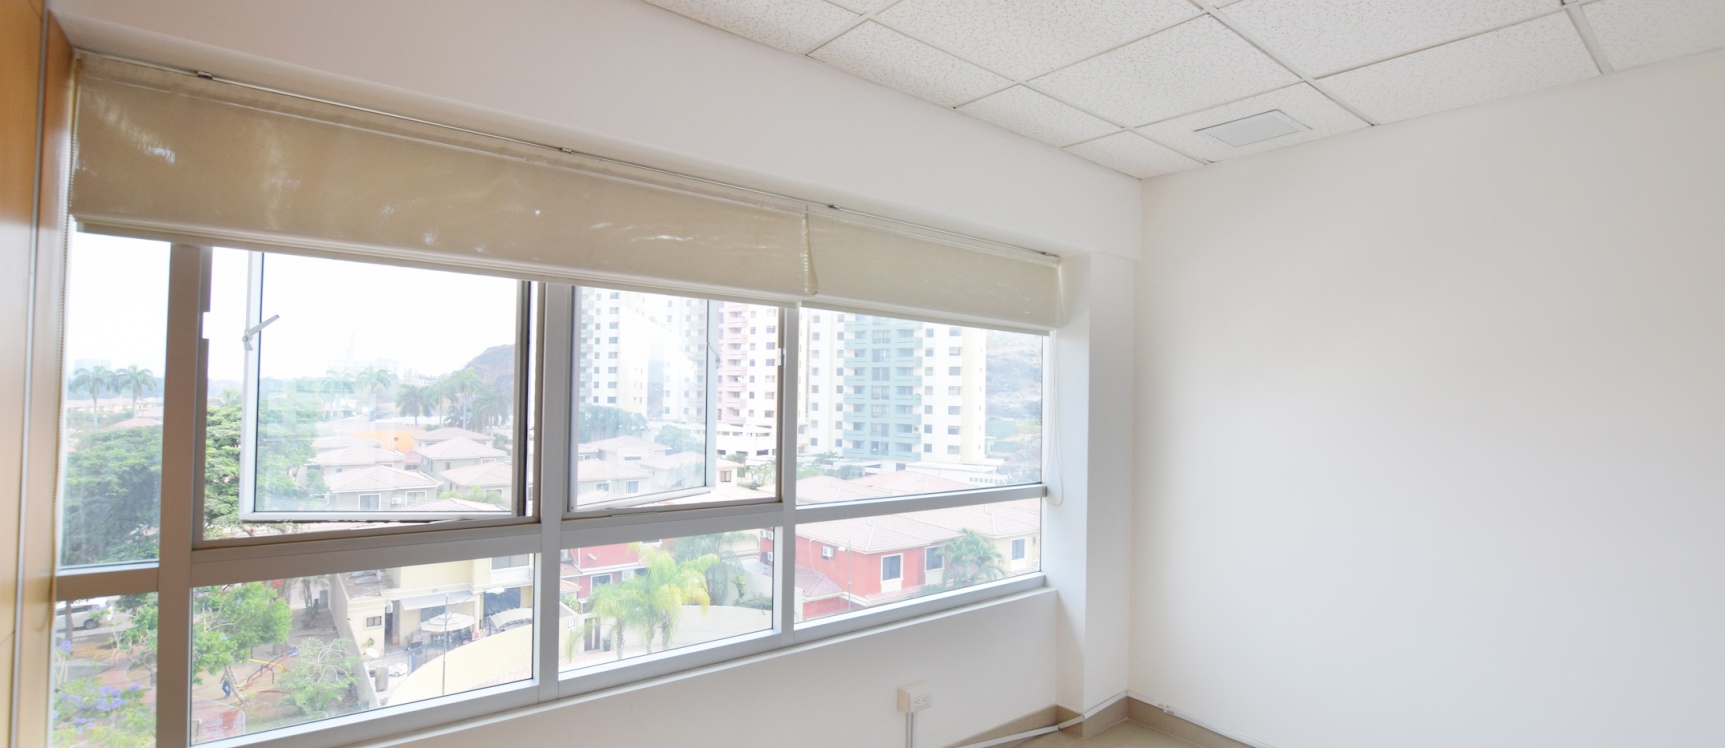 GeoBienes - Oficina en alquile en el Parque Empresarial Colón, Norte de Guayaquil - Plusvalia Guayaquil Casas de venta y alquiler Inmobiliaria Ecuador